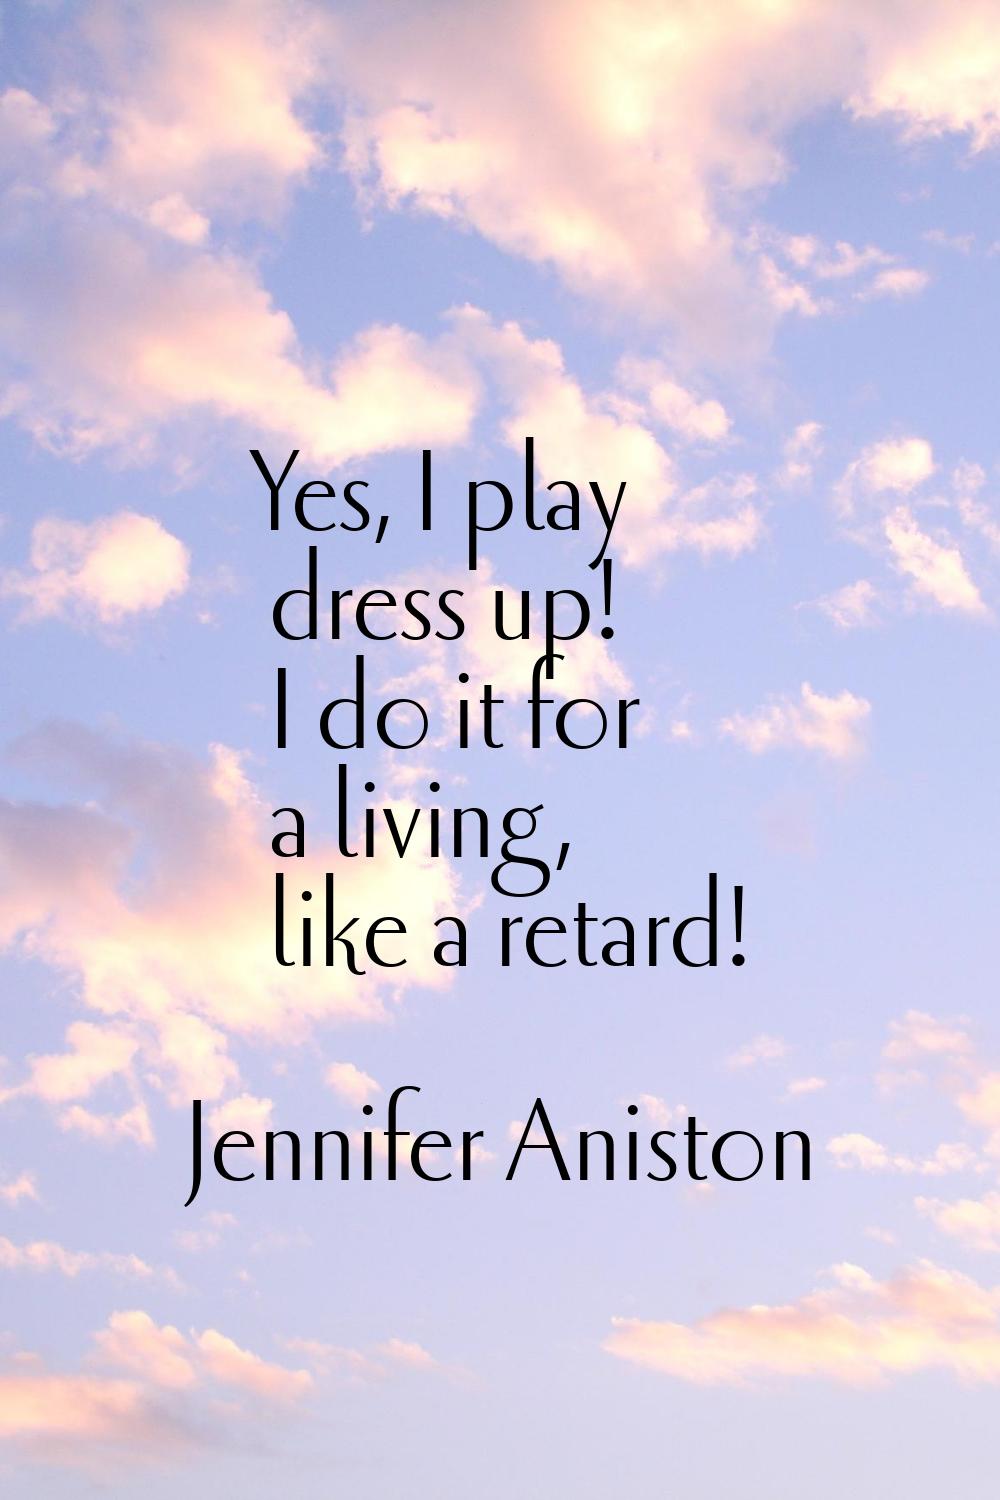 Yes, I play dress up! I do it for a living, like a retard!